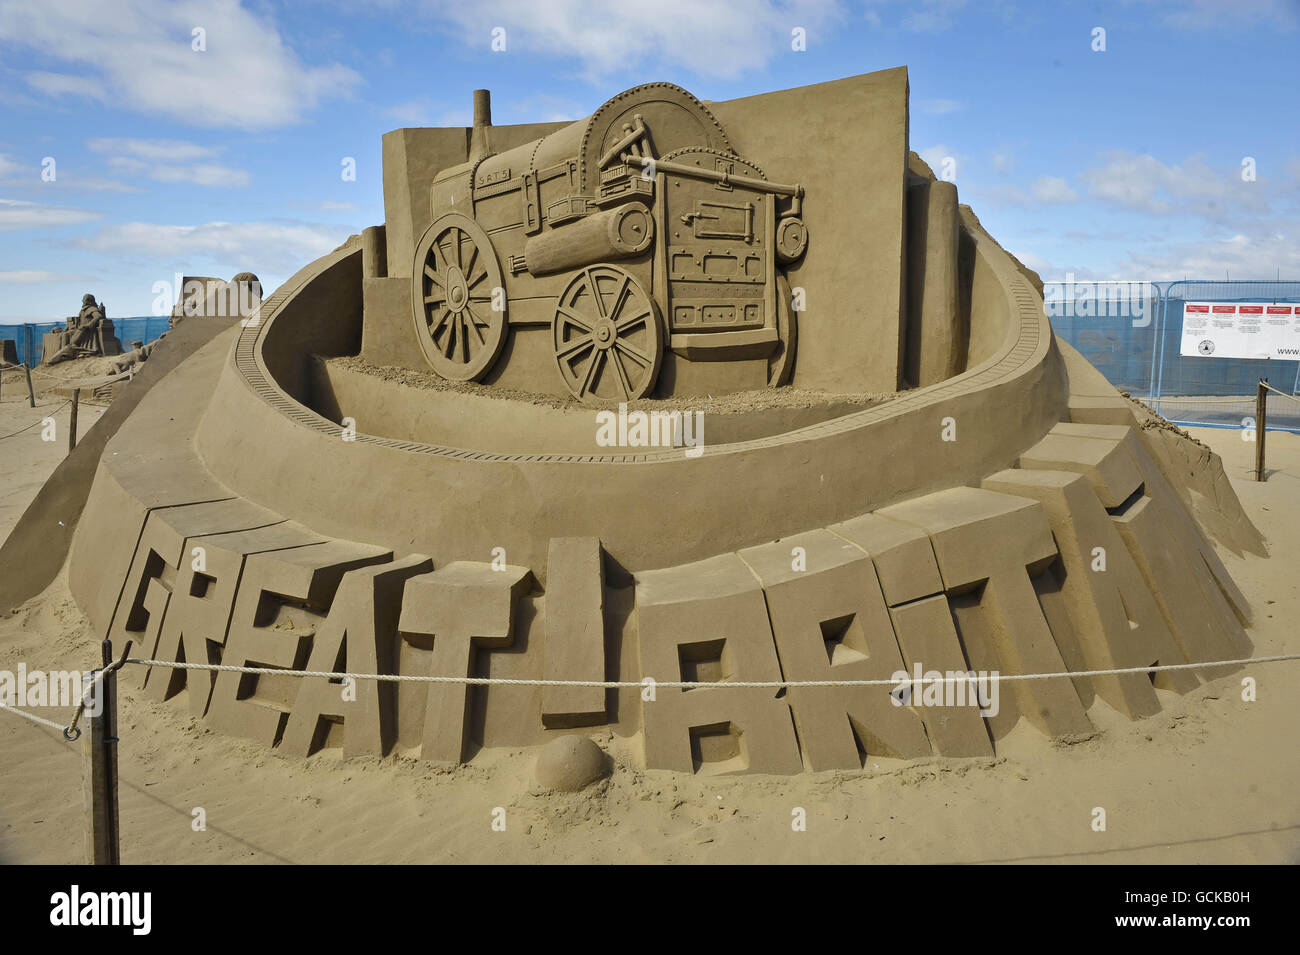 Une sculpture du Rocket de Stephenson dans le Weston-super-Mare Sand Sculpture Festival sur la plage, qui cette année a le thème et la célébration de toutes choses britanniques. Banque D'Images